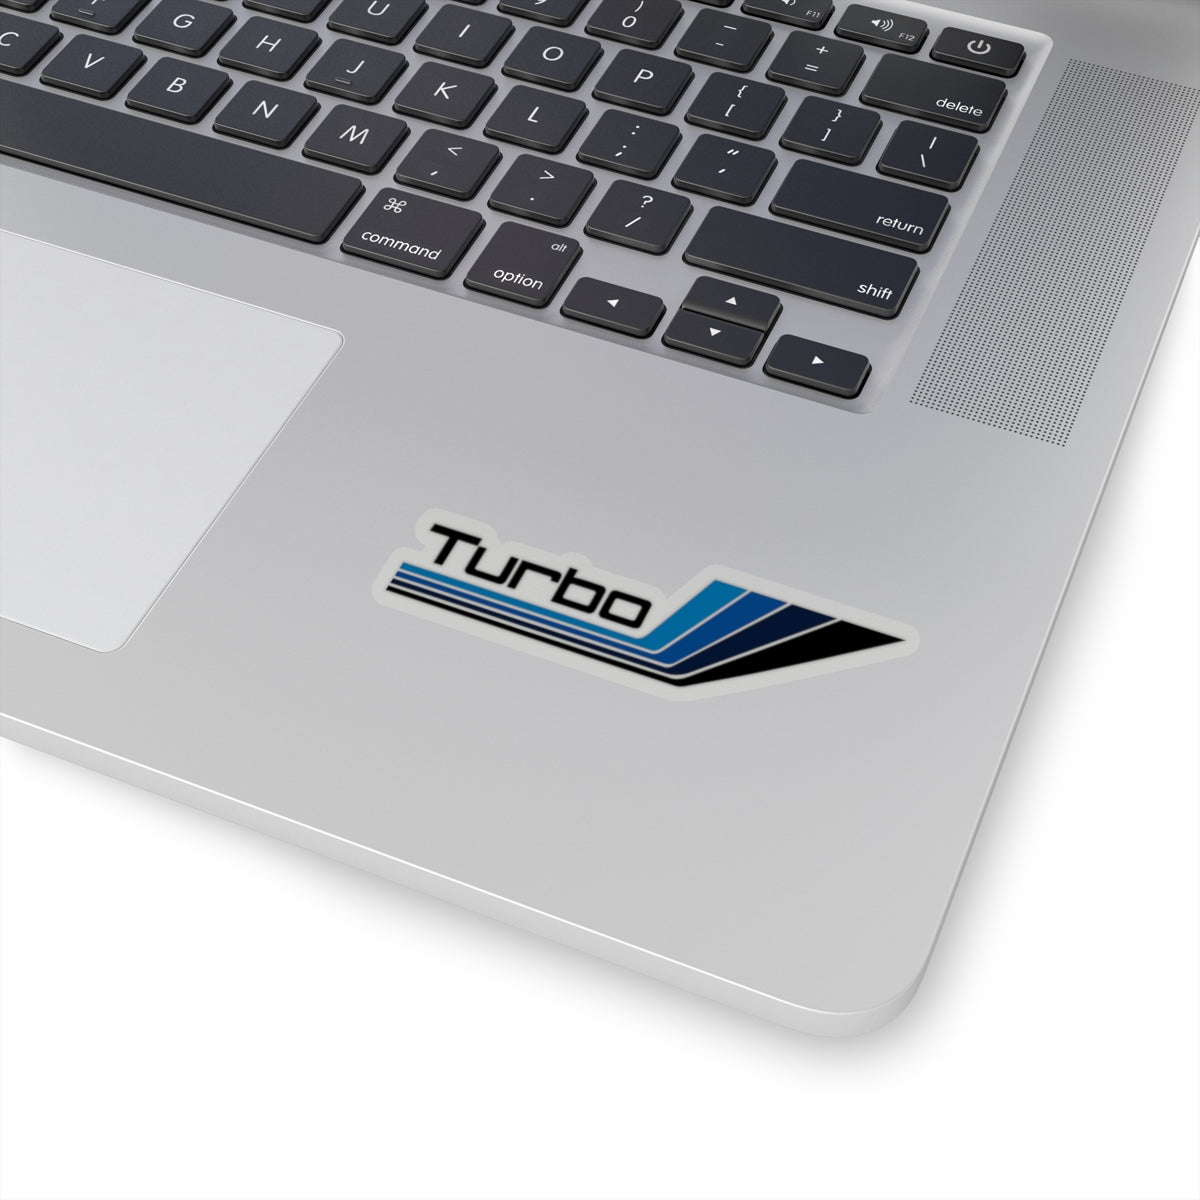 "Turbo Nordica" Black Decal Sticker